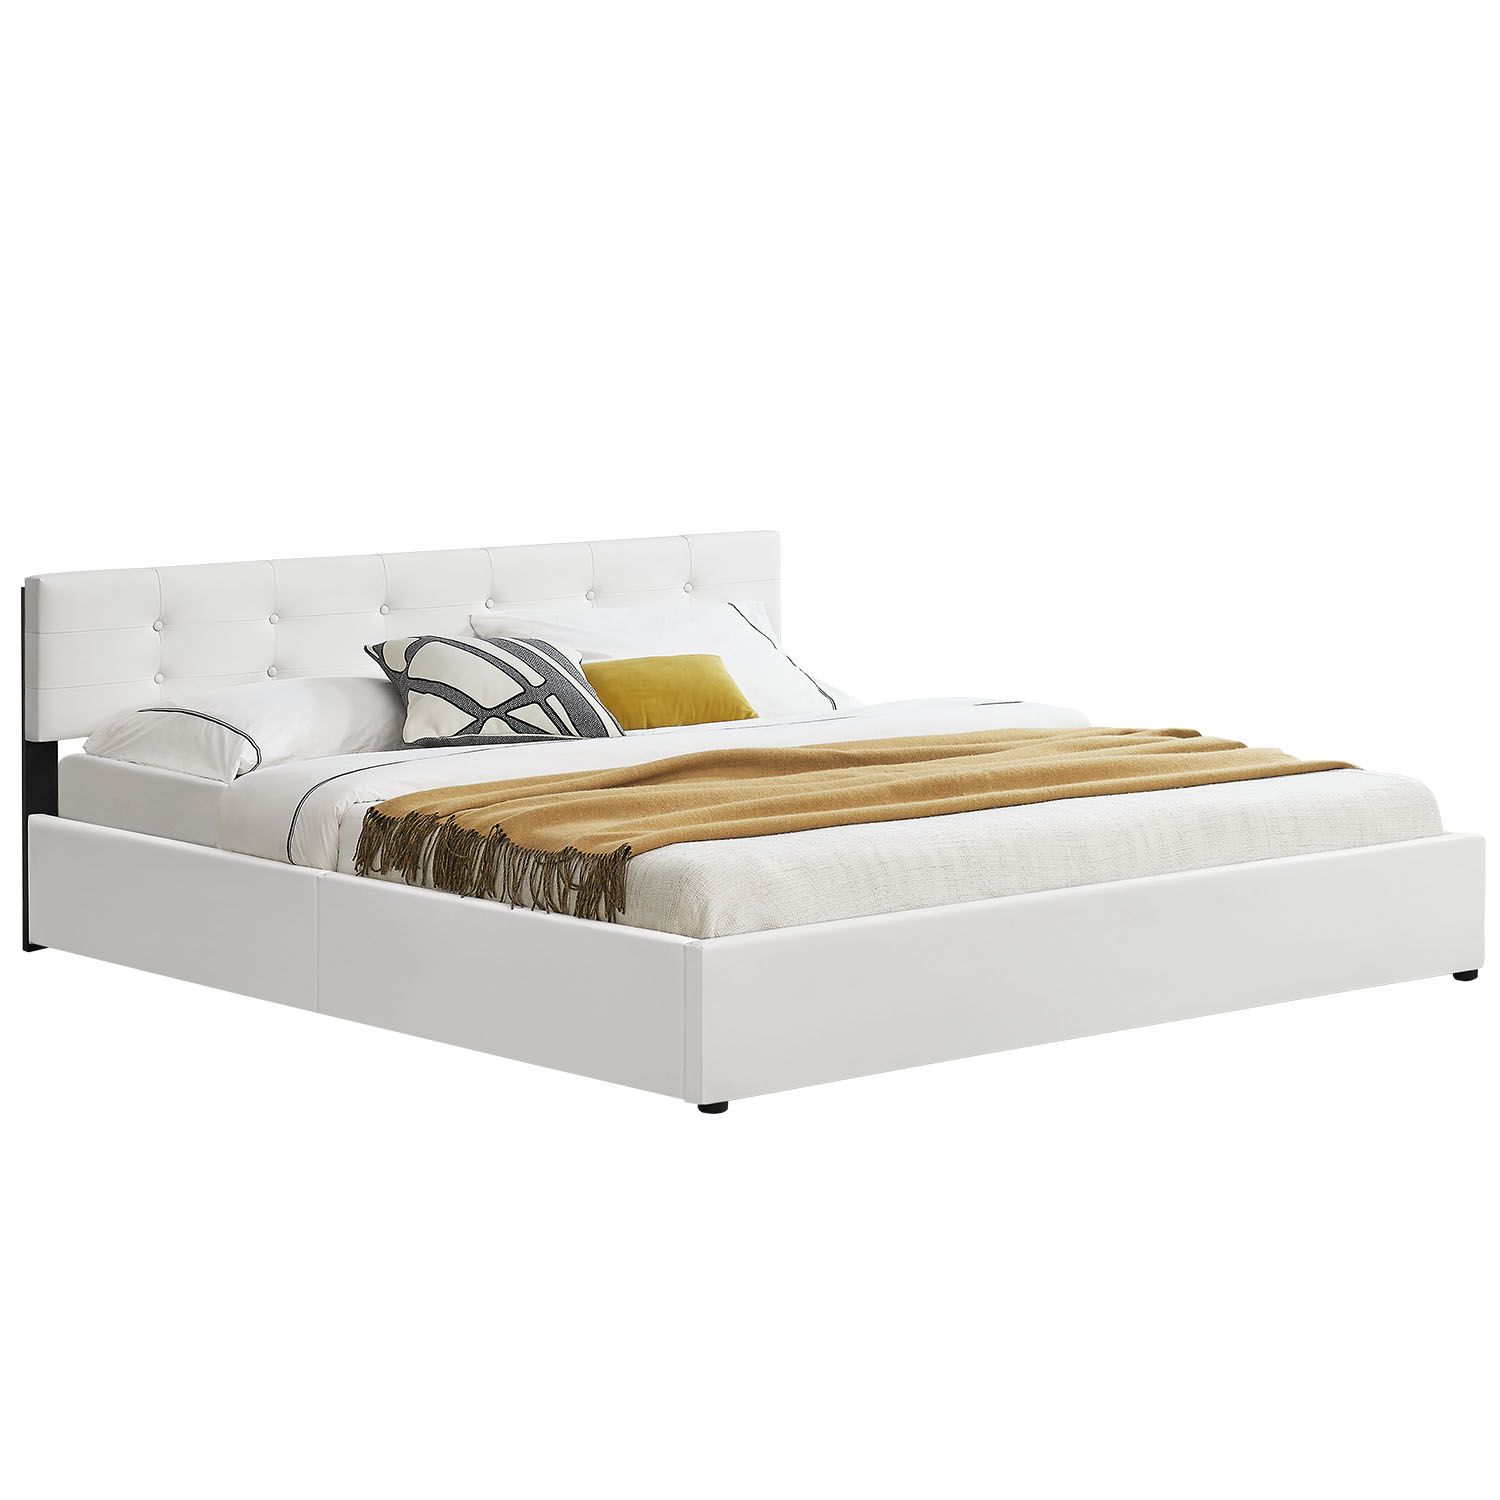 Eshopist Čalouněná postel ,,Marbella" 180 x 200 cm - bílá